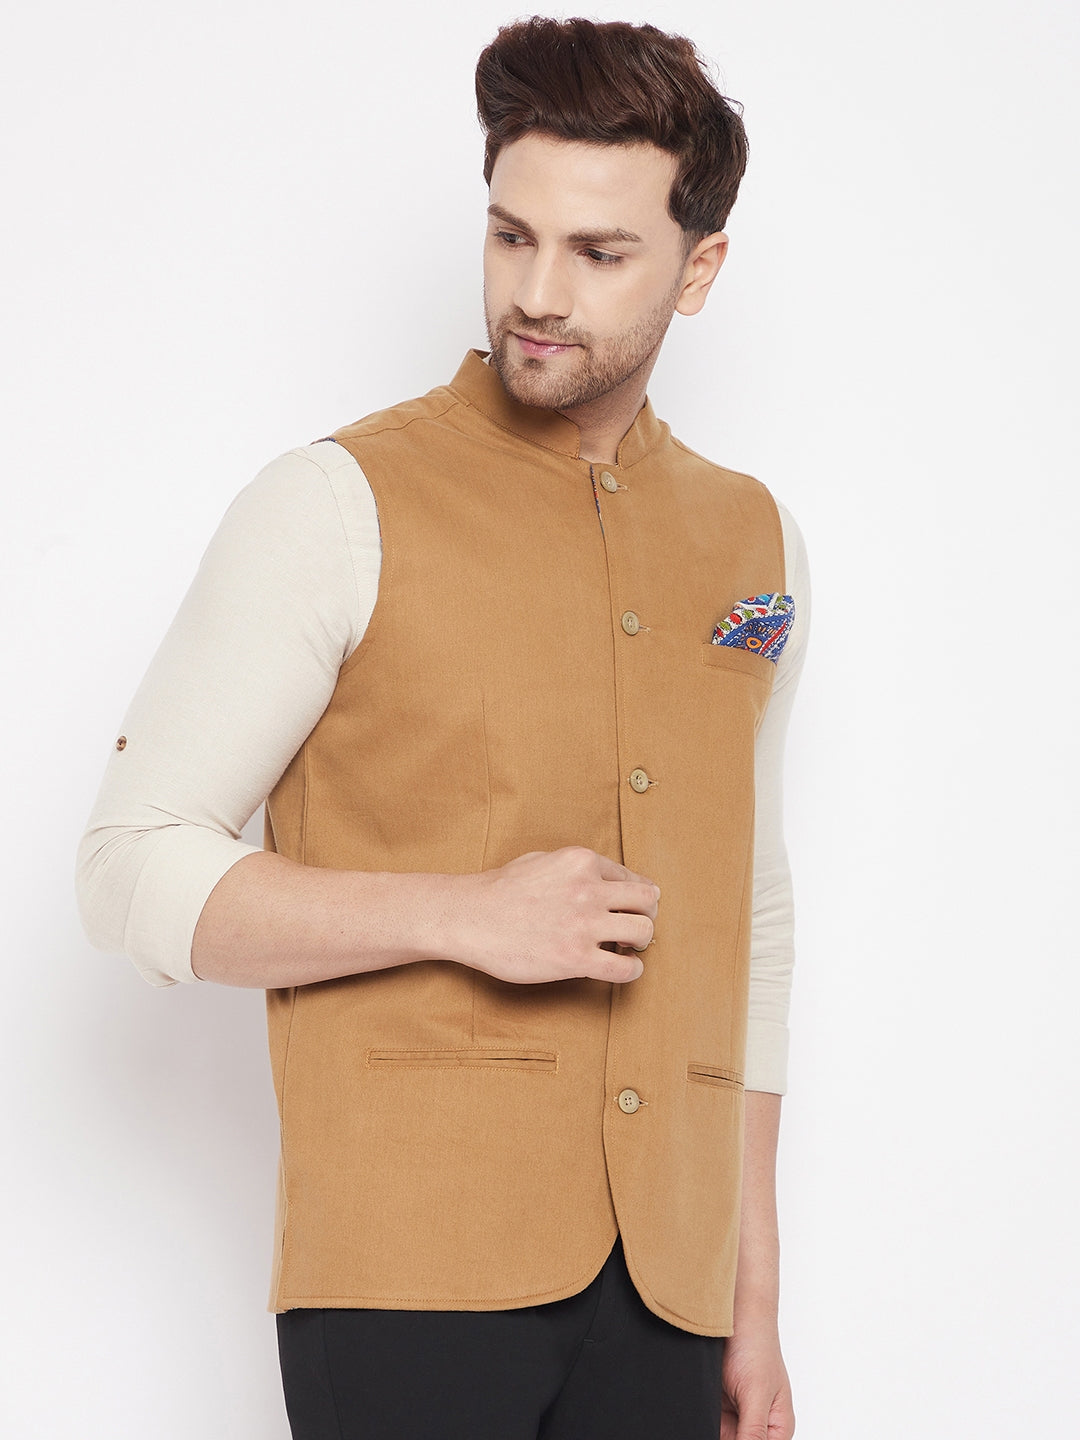 Men's Brown Color Nehru Jacket-Contrast Lining-Inbuilt Pocket Square - Even Apparels